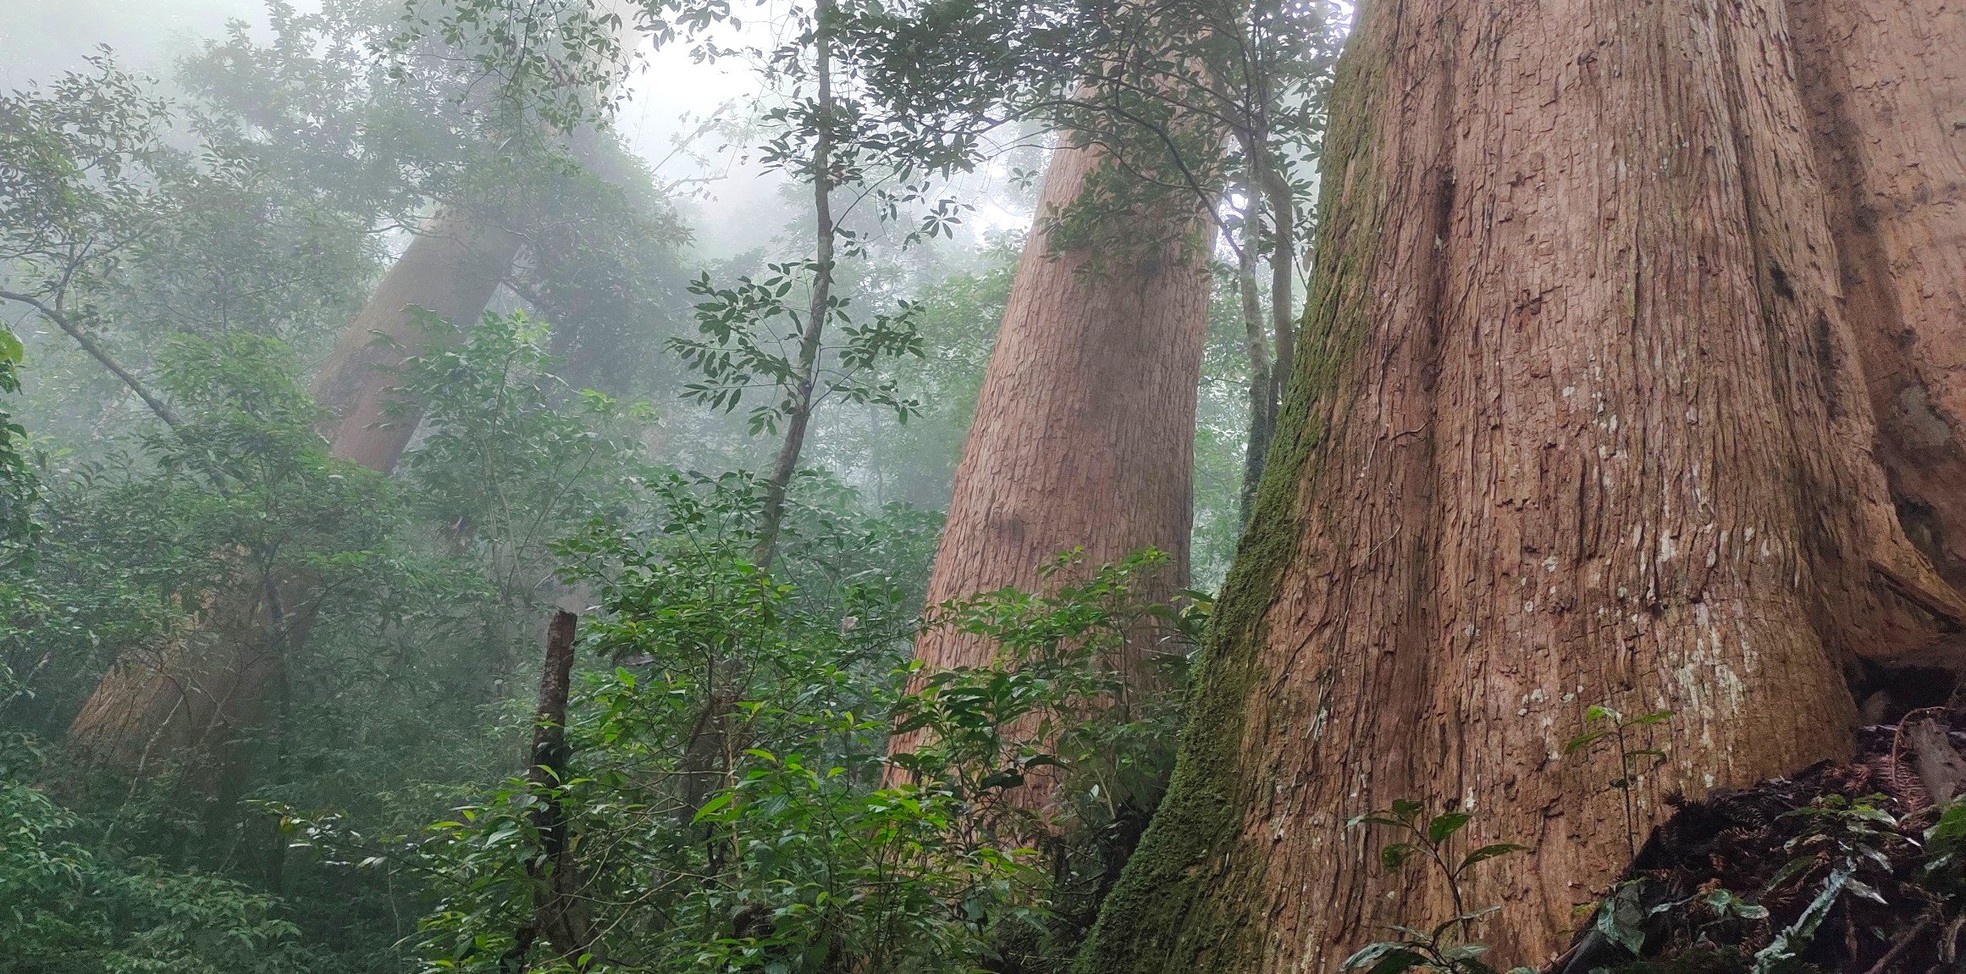 Ngắm cổ thụ Sa mu dầu hơn 2.000 tuổi trong lõi rừng già, được công nhận là cây di sản Việt Nam - Ảnh 9.